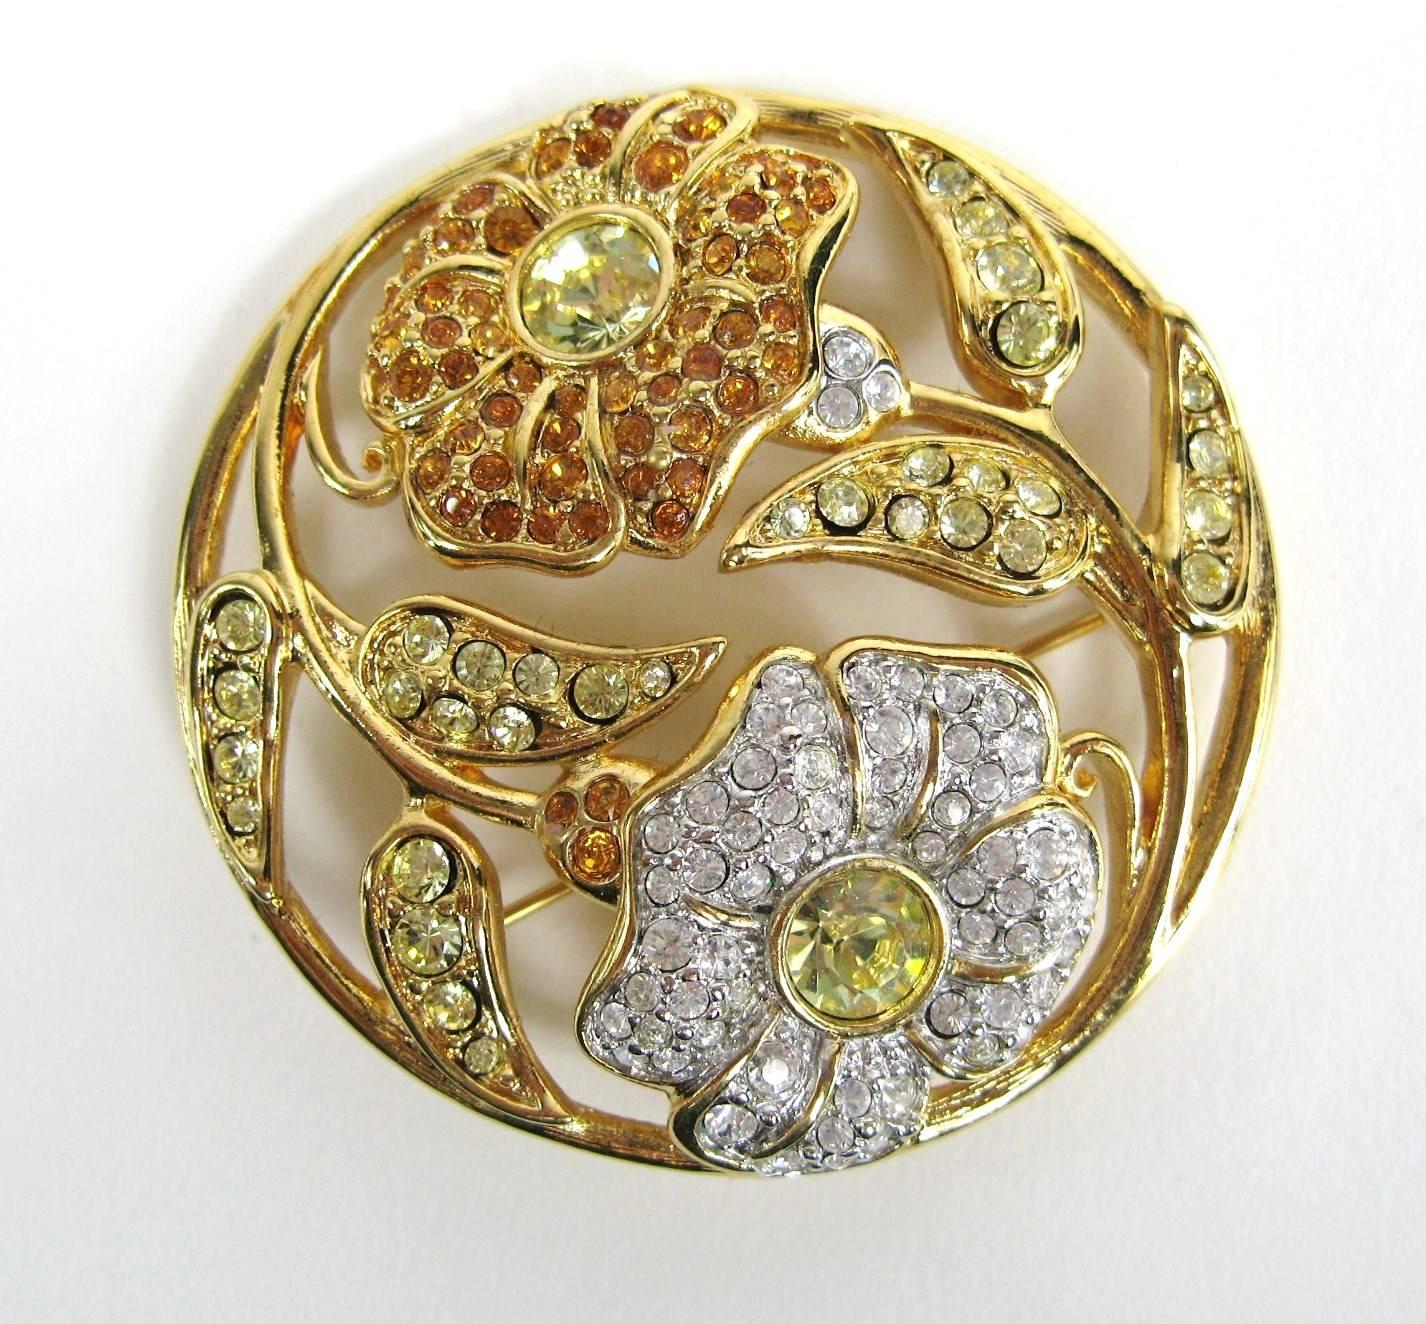 Superbe broche florale Swarovski en forme de cercle. Fleurs en ambre et cristal clair. Mesure 1.90 in / 48.84 mm. Il est livré dans sa boîte d'origine. Il s'agit d'une collection massive de bijoux Hopi, Zuni, Navajo, du Sud-Ouest, en argent